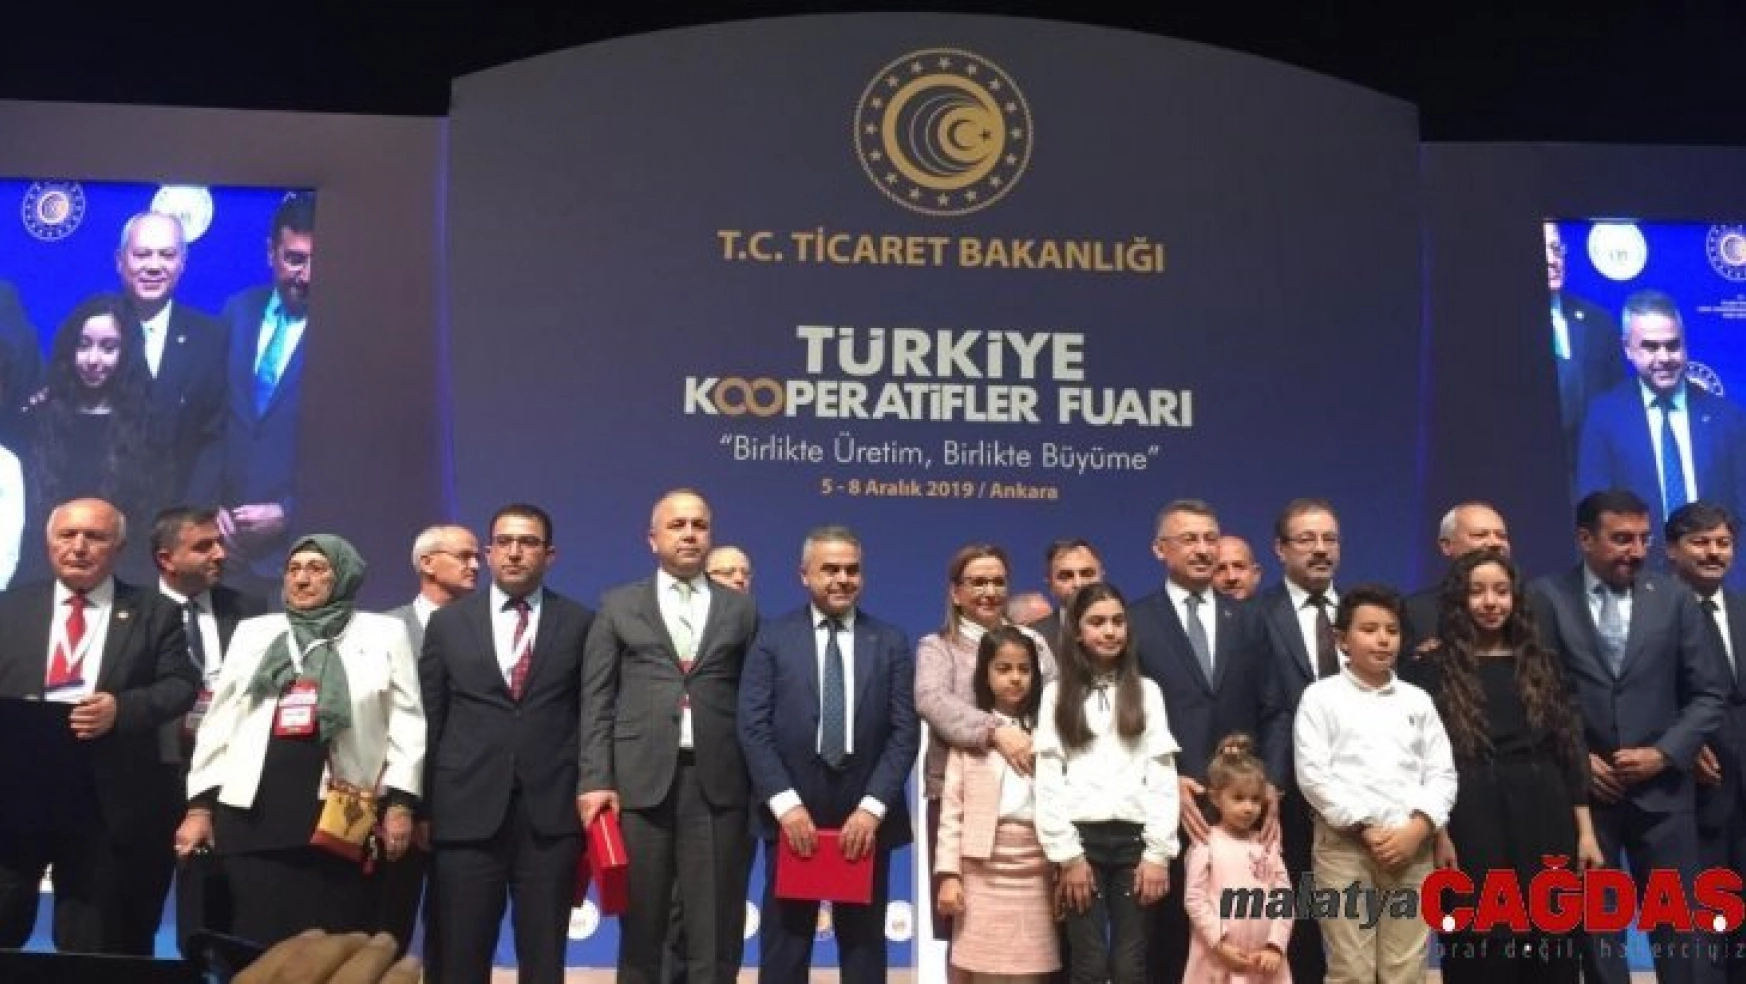 Türkiye Kooperatifler Fuarı'nda Adana stantına yoğun ilgi